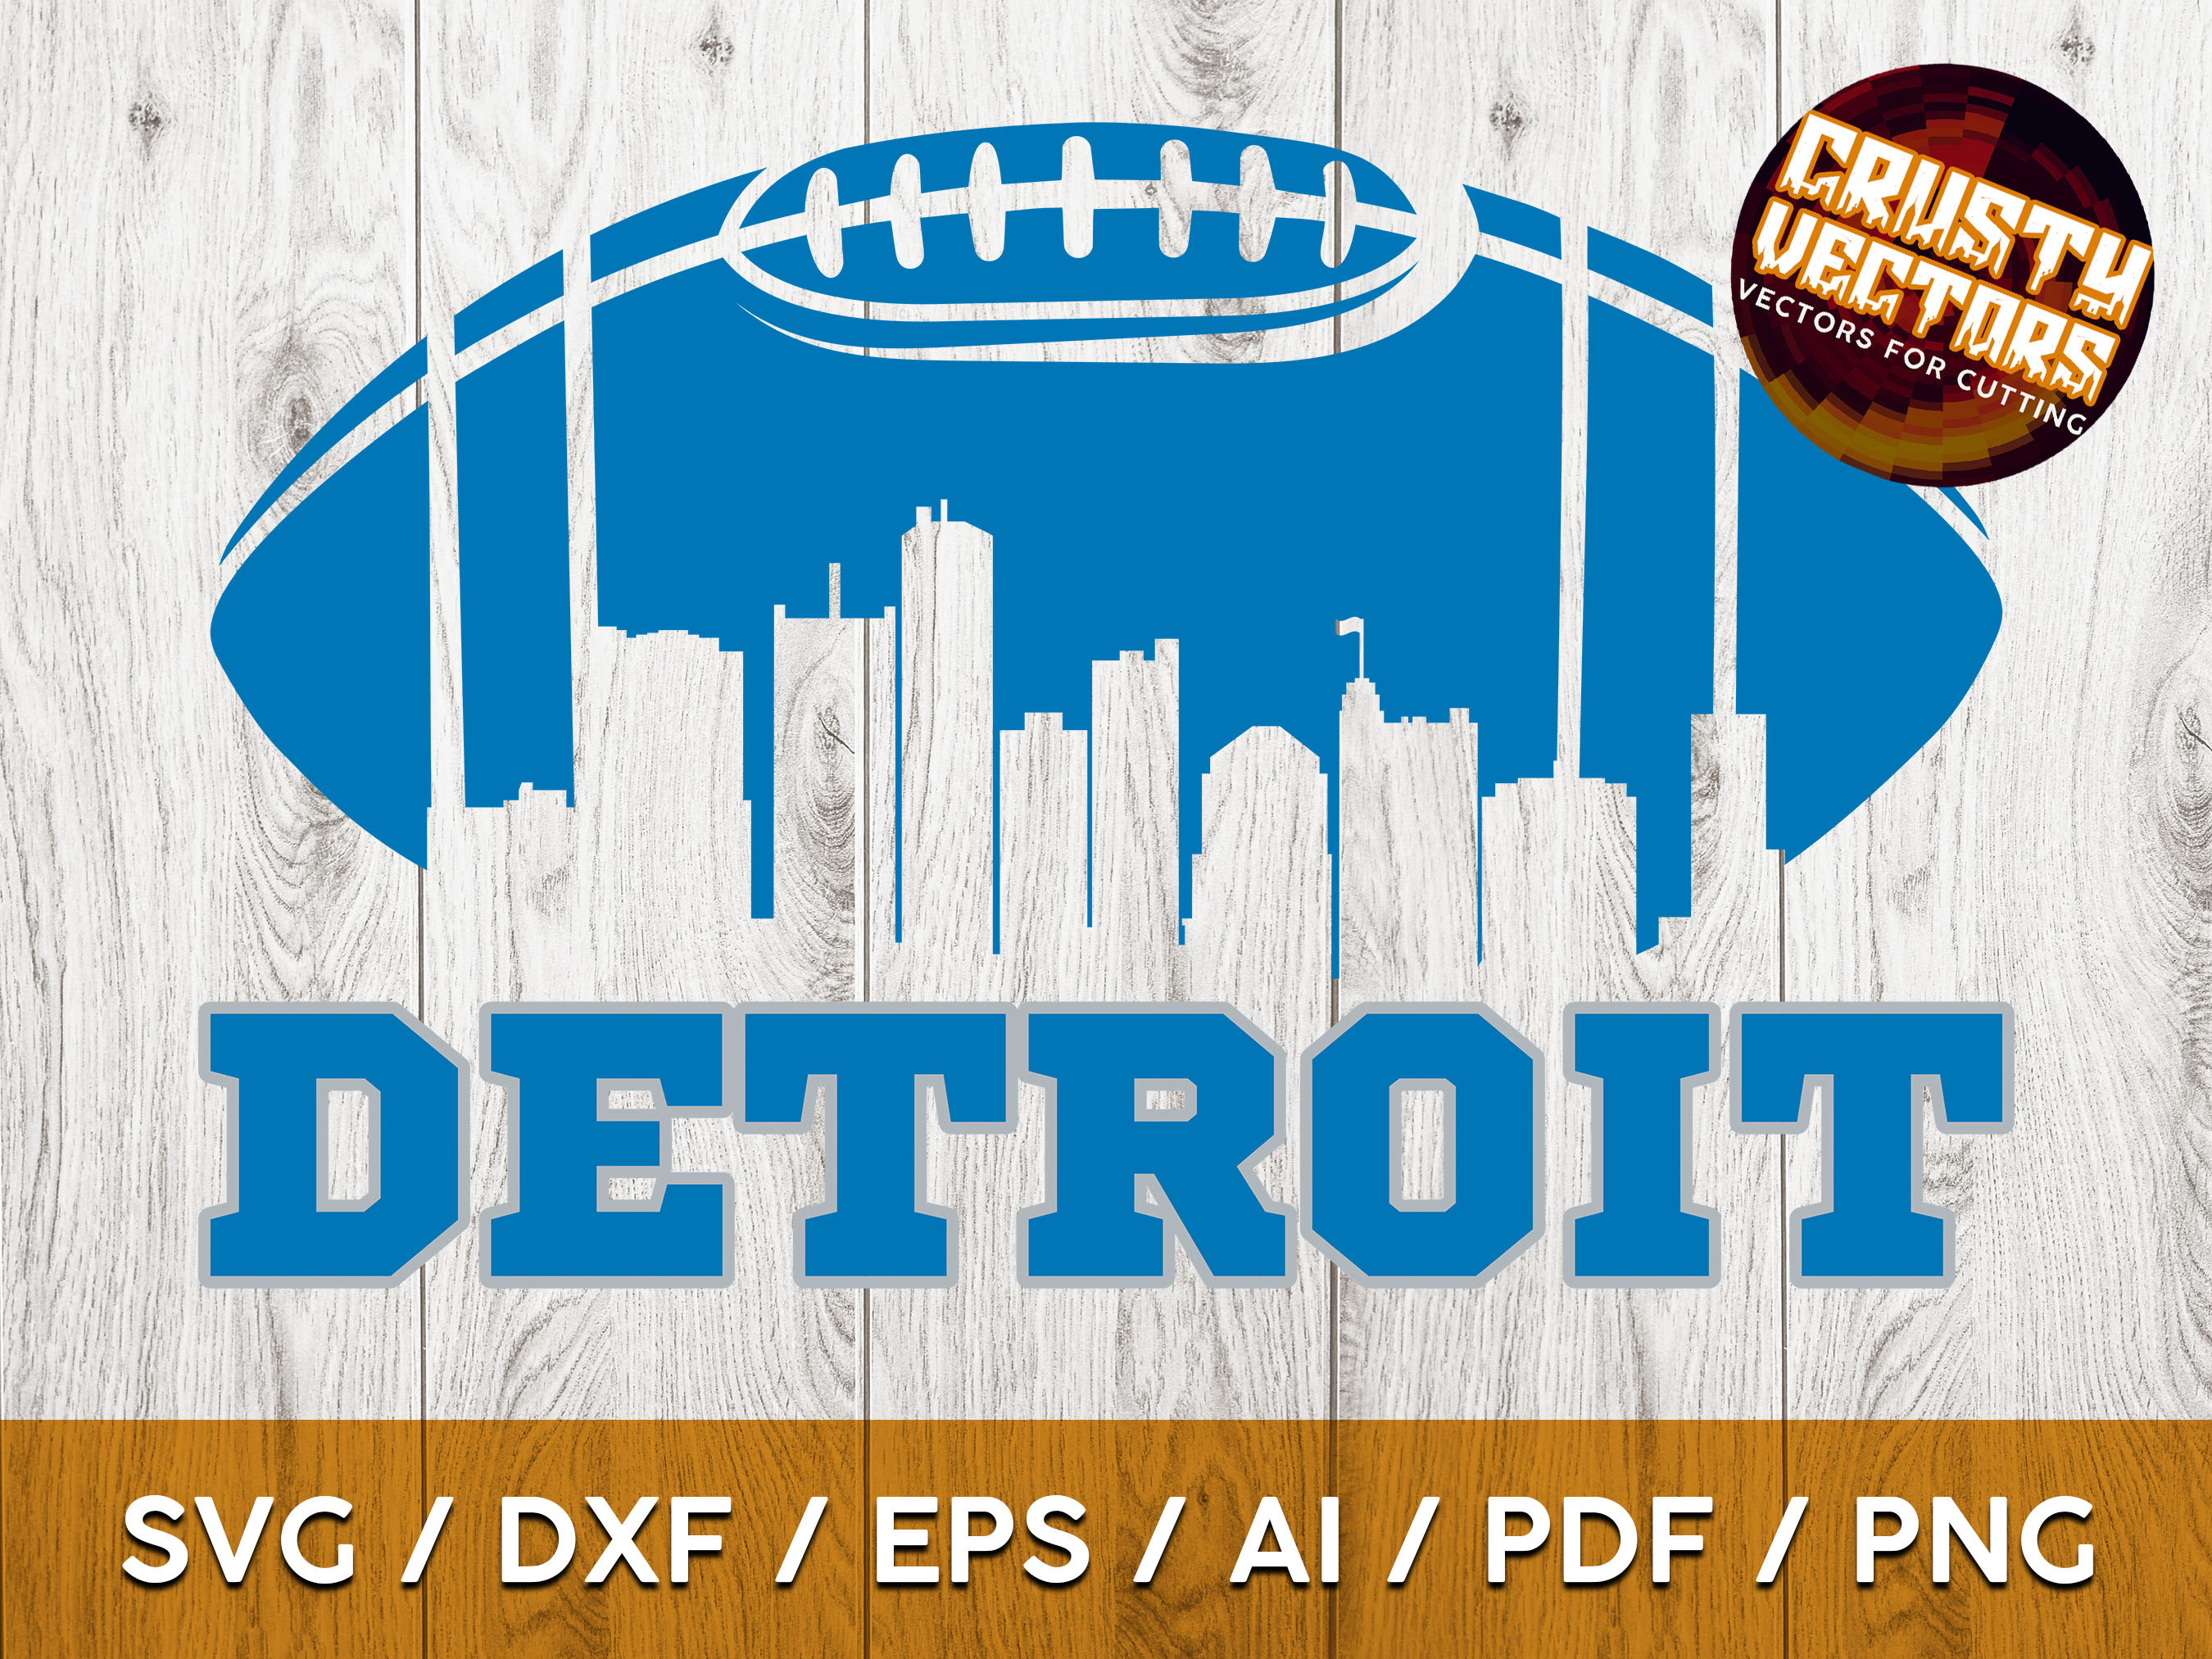 Detroit Lions NFL Silver Slogan Bracelet - Detroit Lions